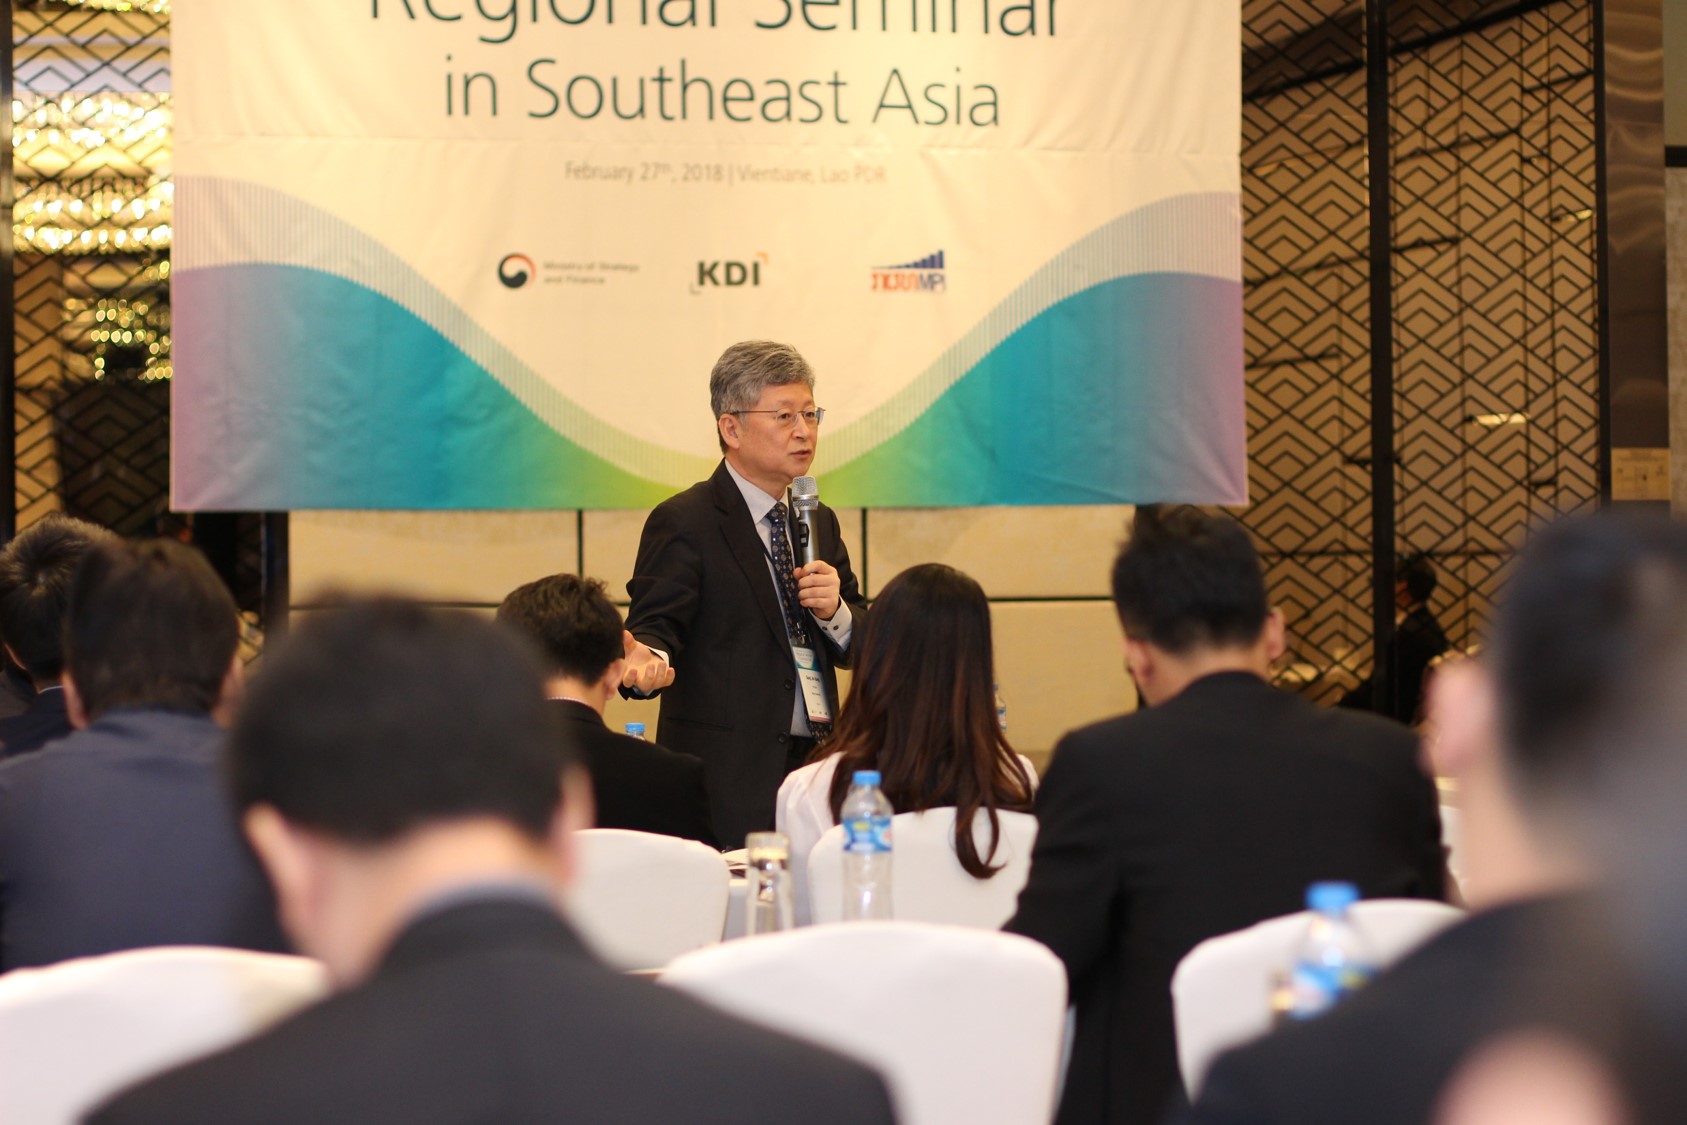 2017/18 KSP Regional Seminar in Southeast Asia image